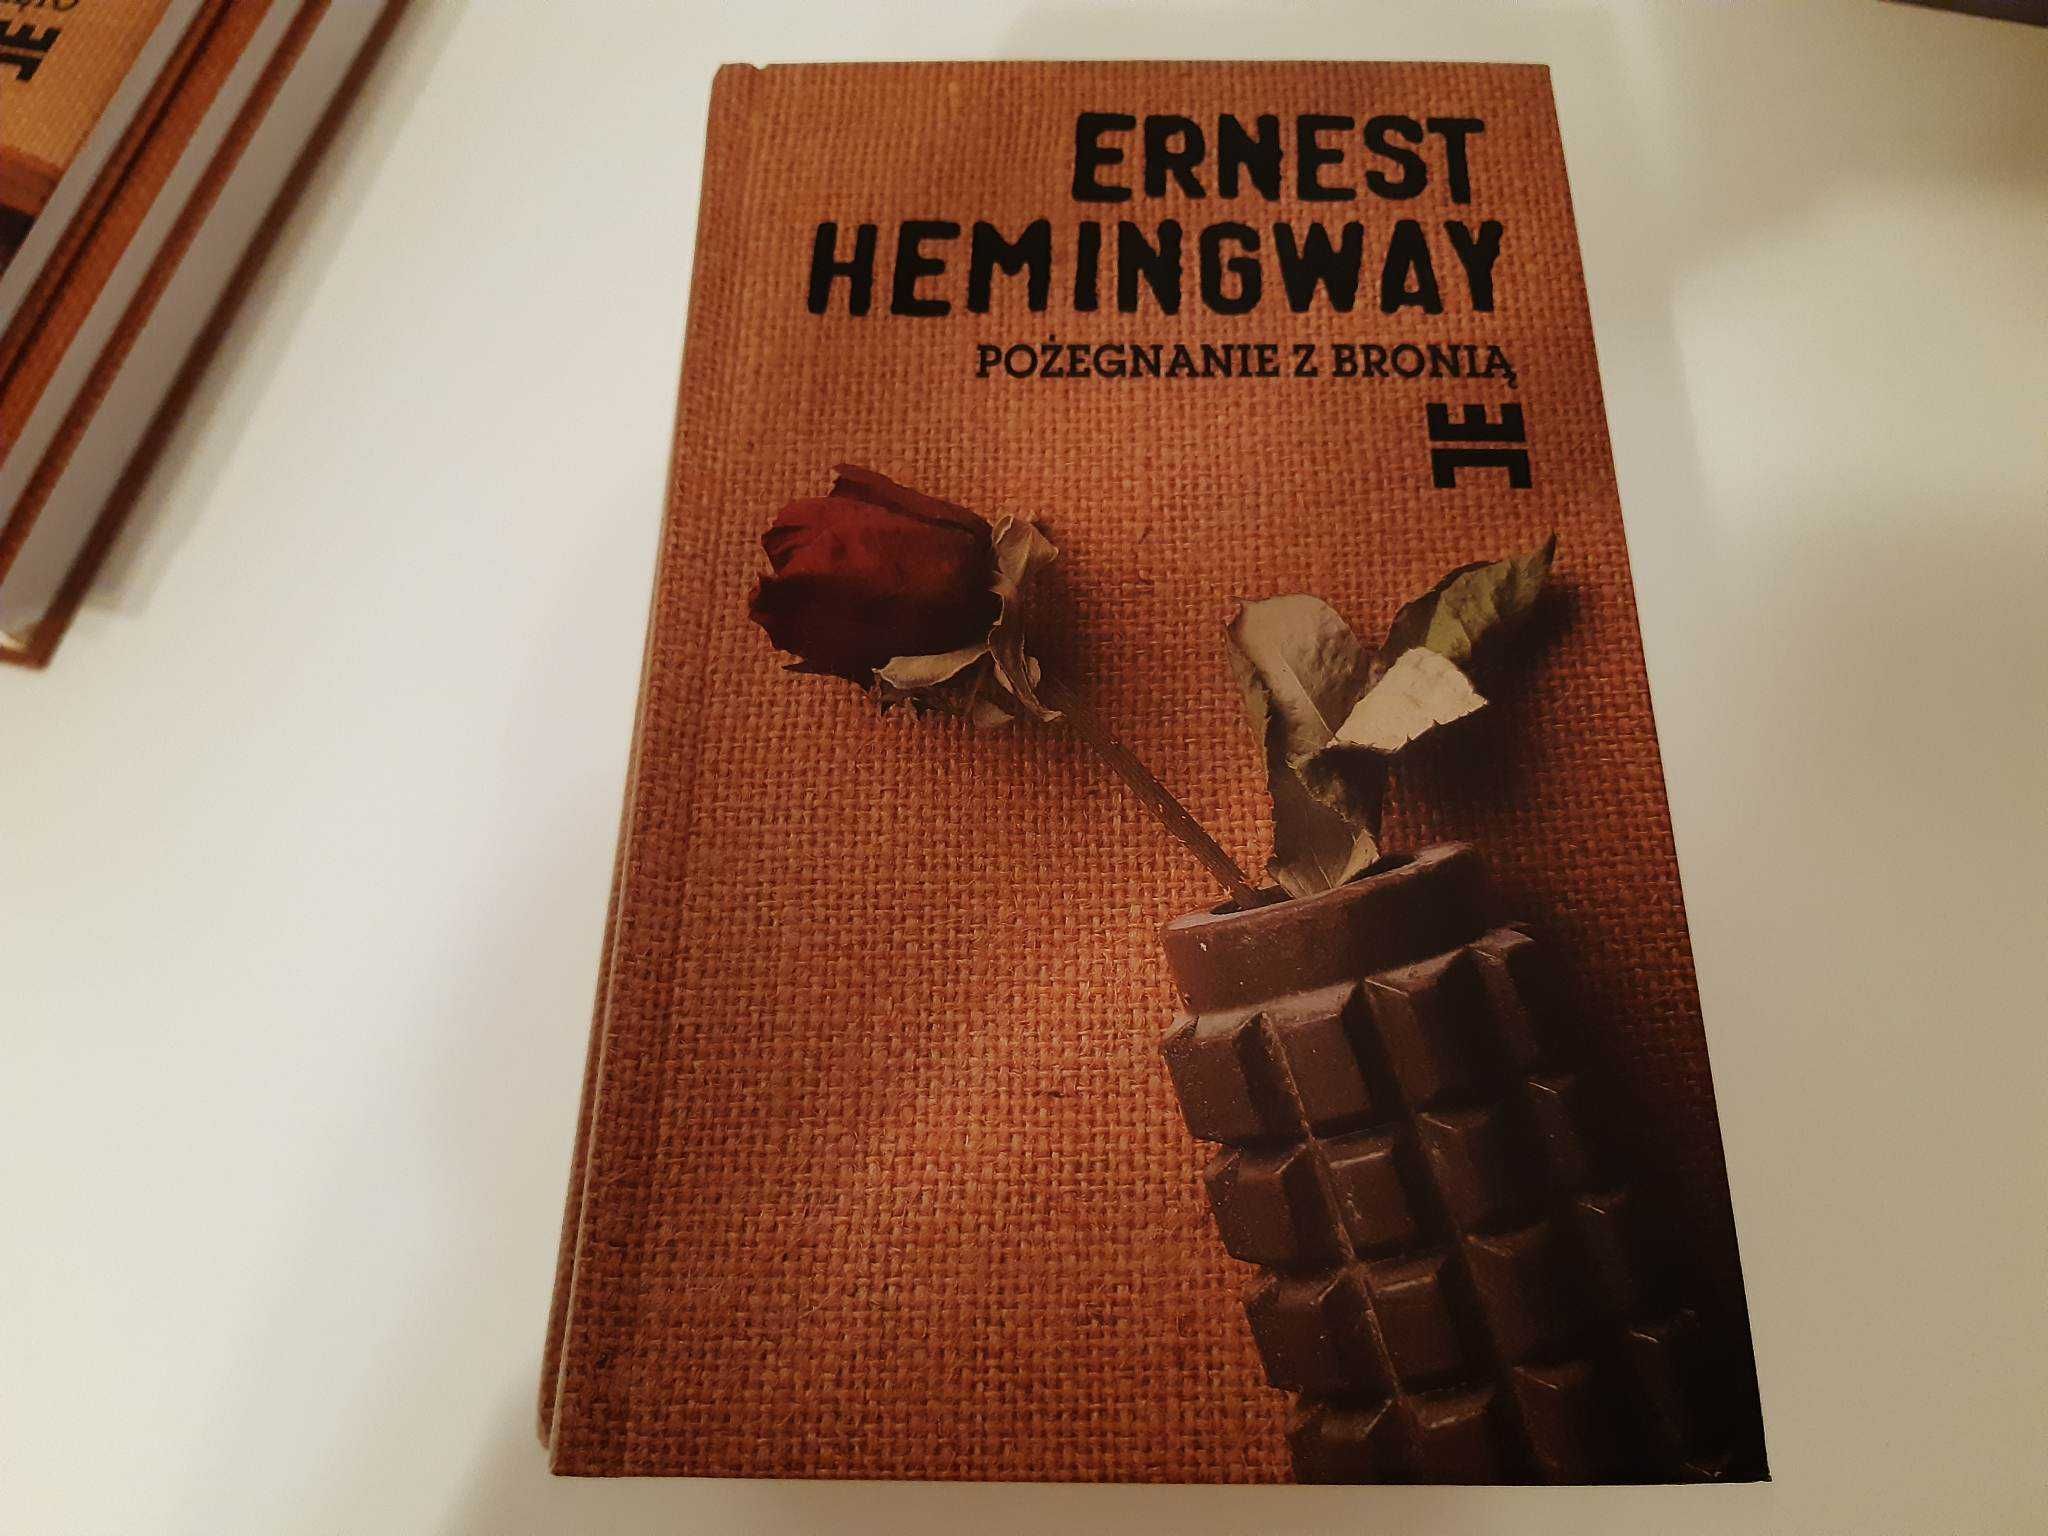 Ernest Hemingway, Pożegnanie z bronią, Wydawnictwo Muza, 1999r.